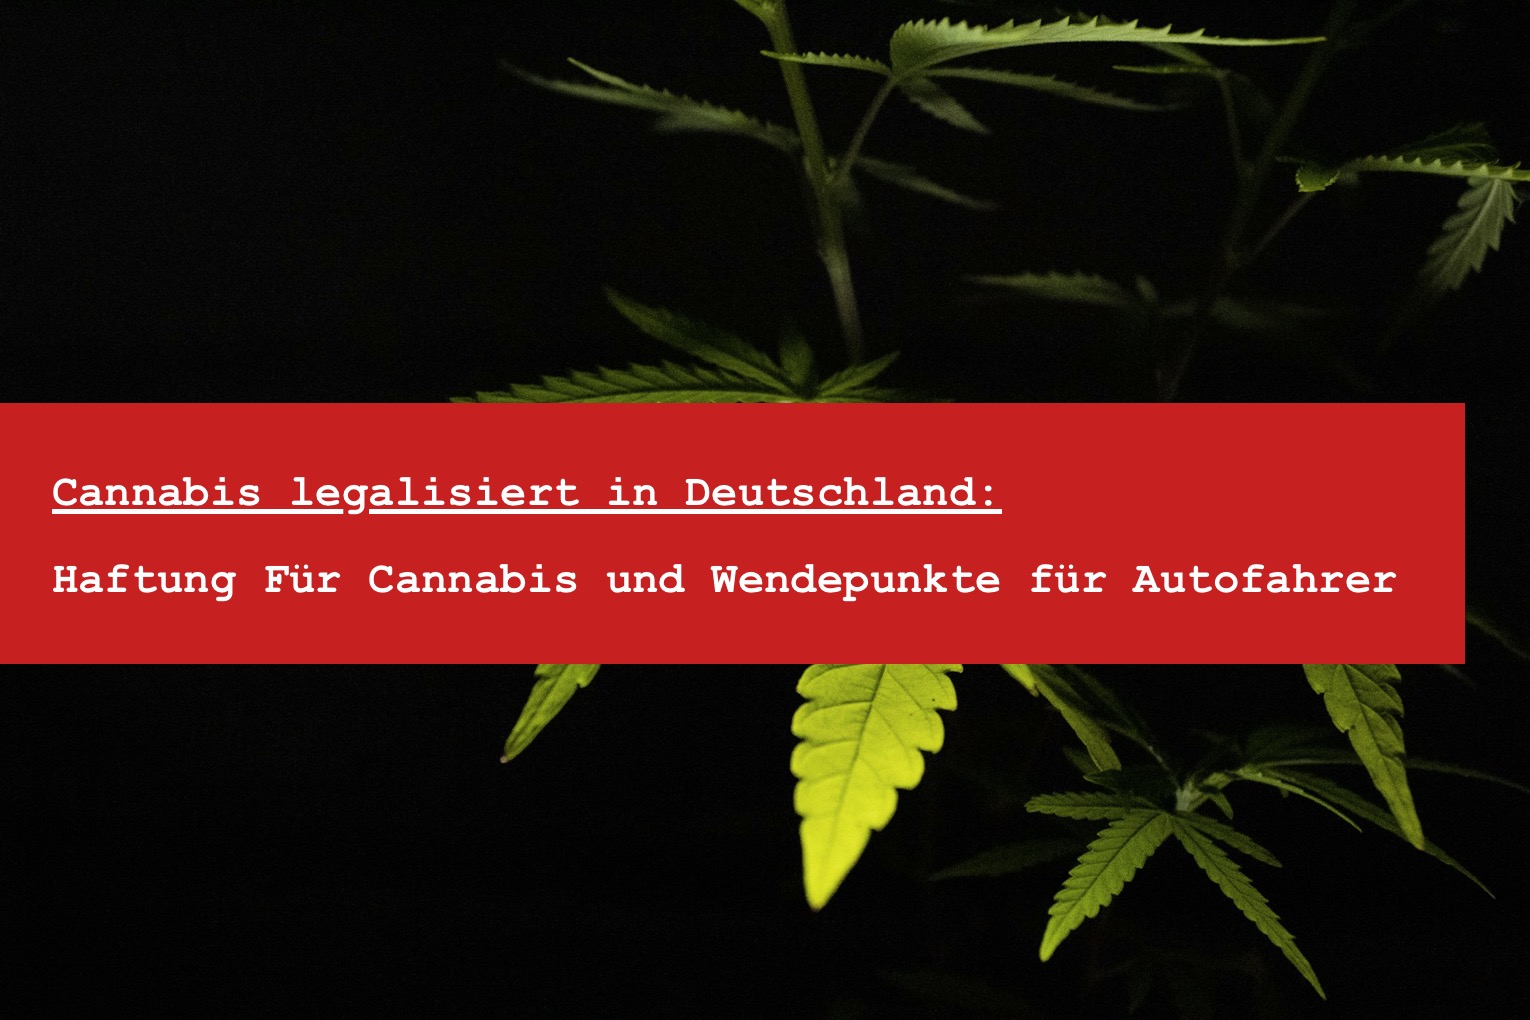 Cannabis legalisiert in Deutschland - THC Autokontrolle und Cannabiskonsum Menge